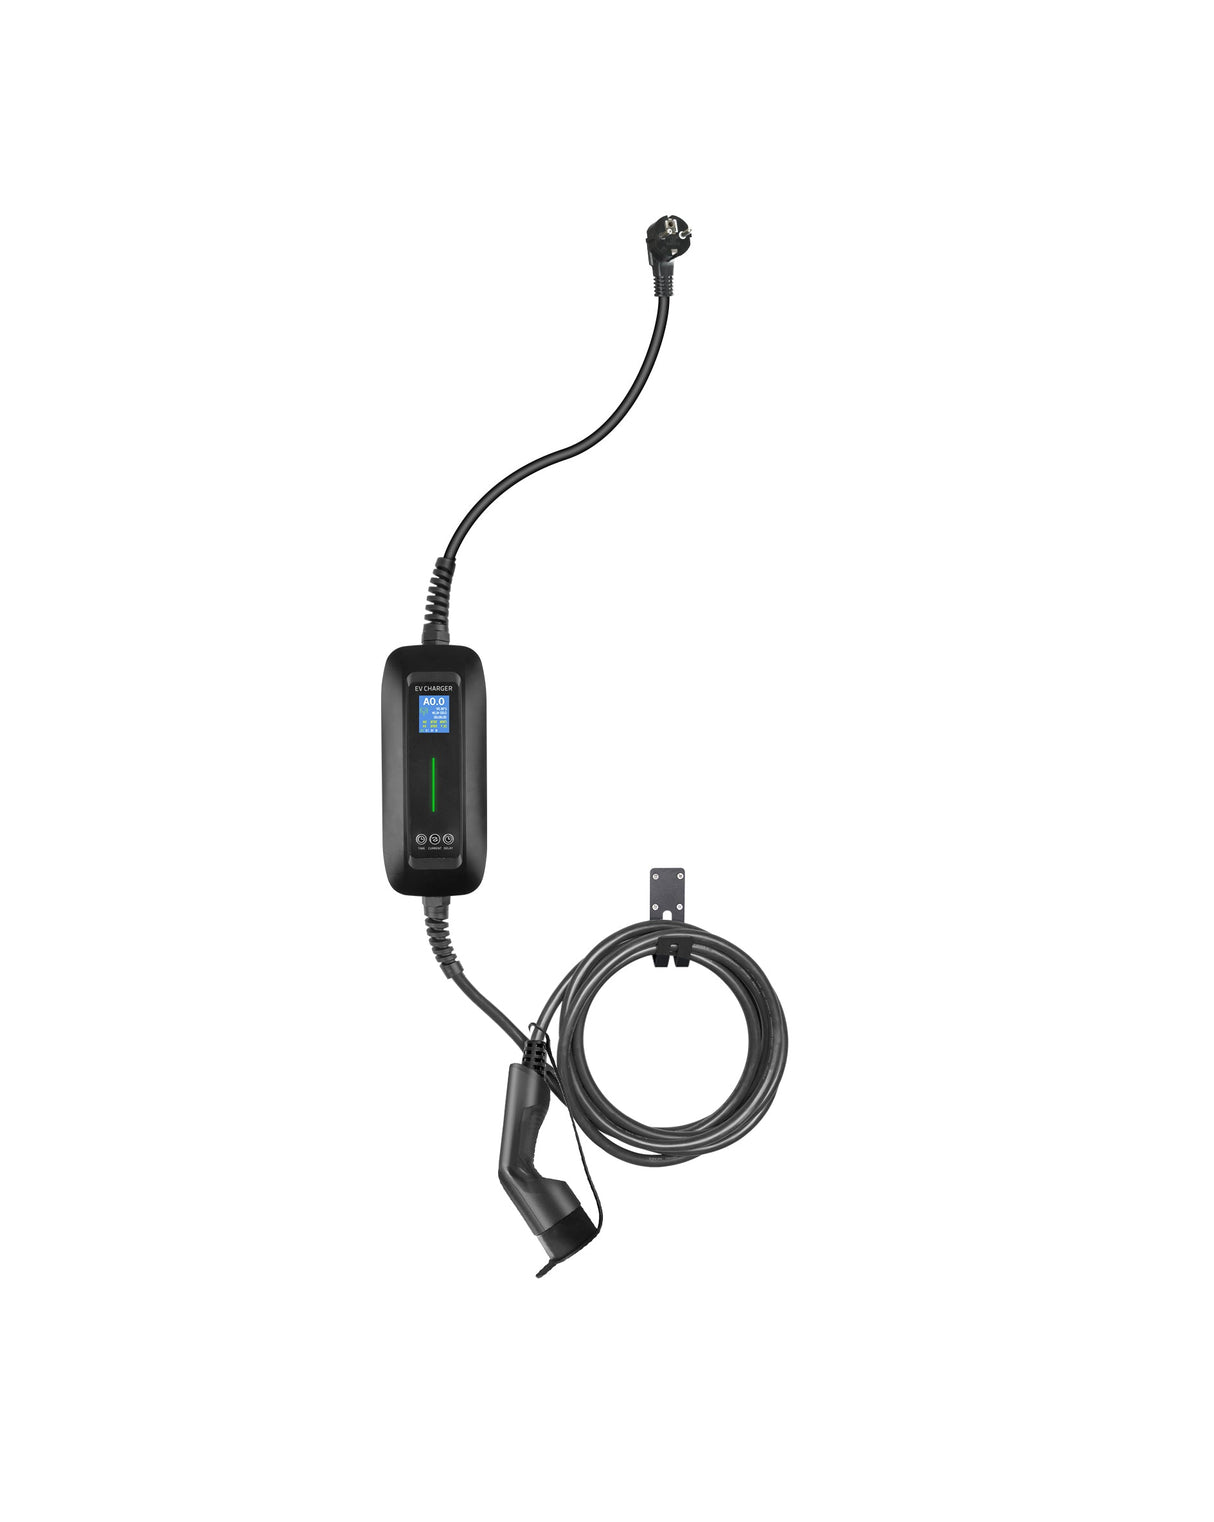 Mobile Charger Lucid Air - LCD Black Type 2 à Schuko - Fonction de chargement basalisé et de mémoire